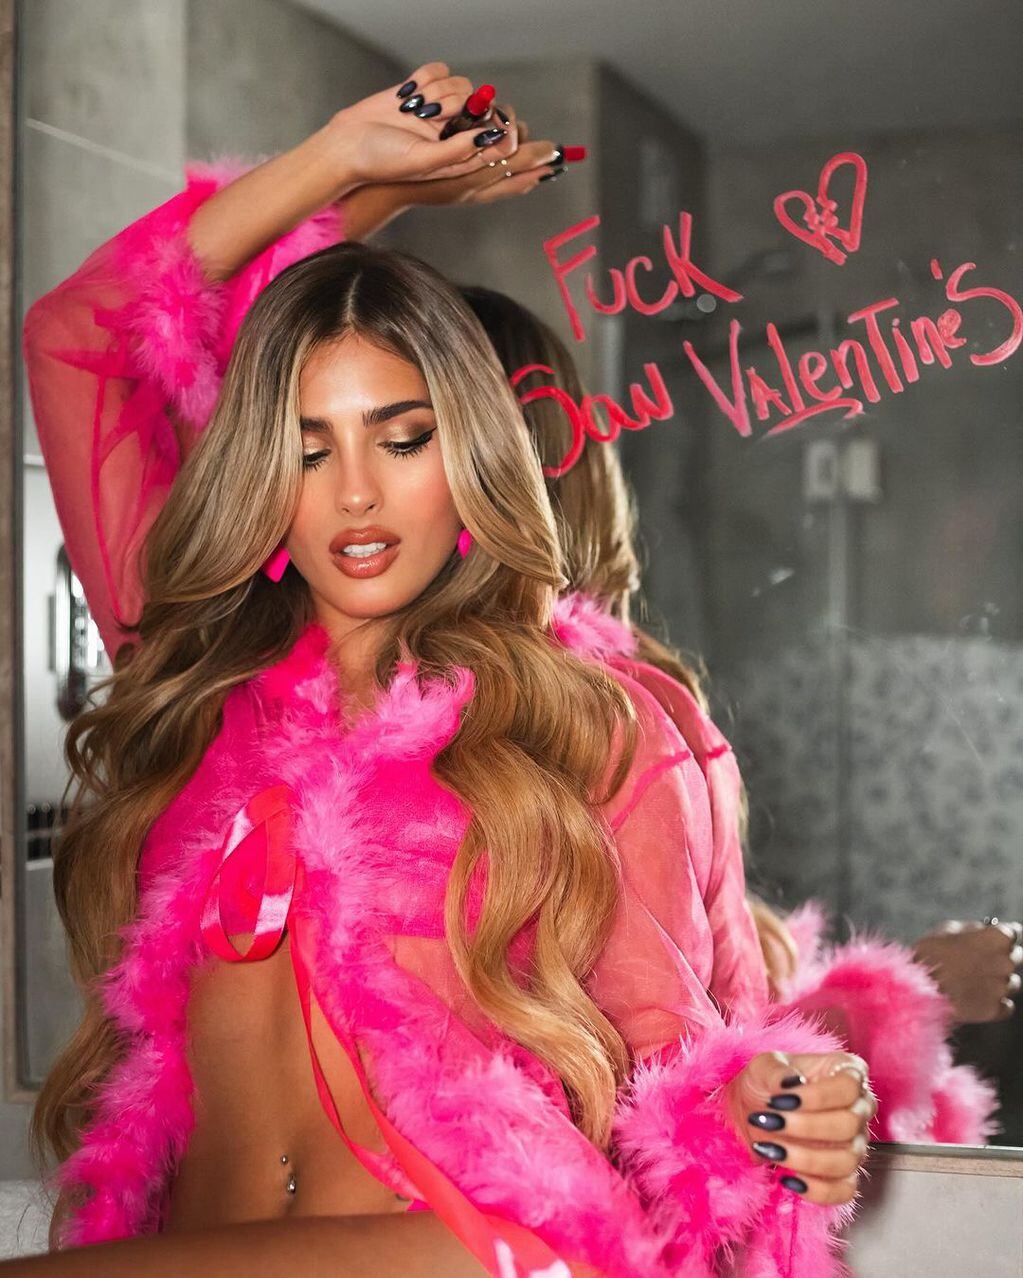 El "anti San Valentín" de Julieta Poggio. Gentileza Instagram.